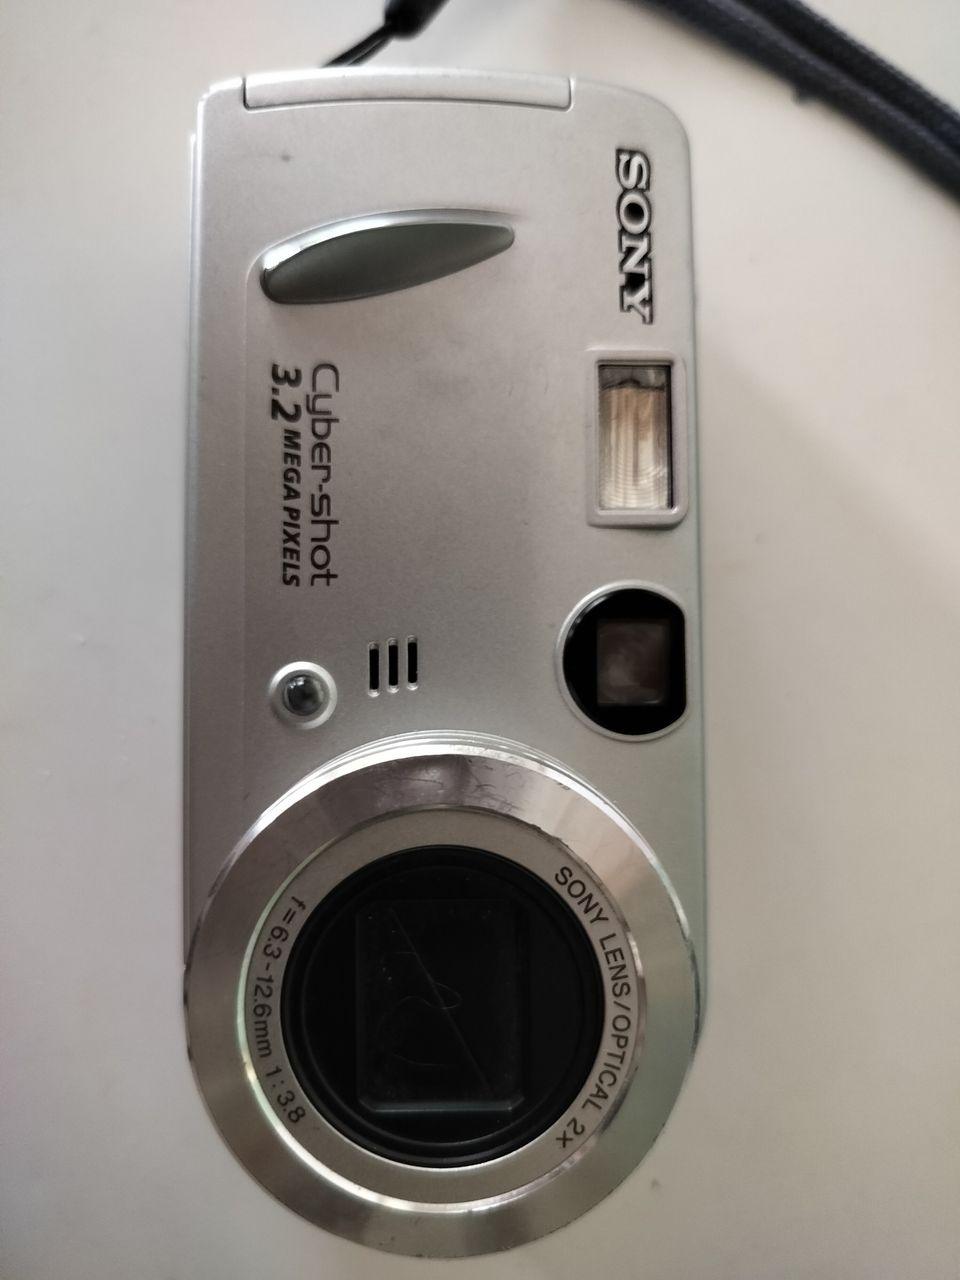 Sony Cyber-shot DSC-52 3.2 megapixel digital camera silver